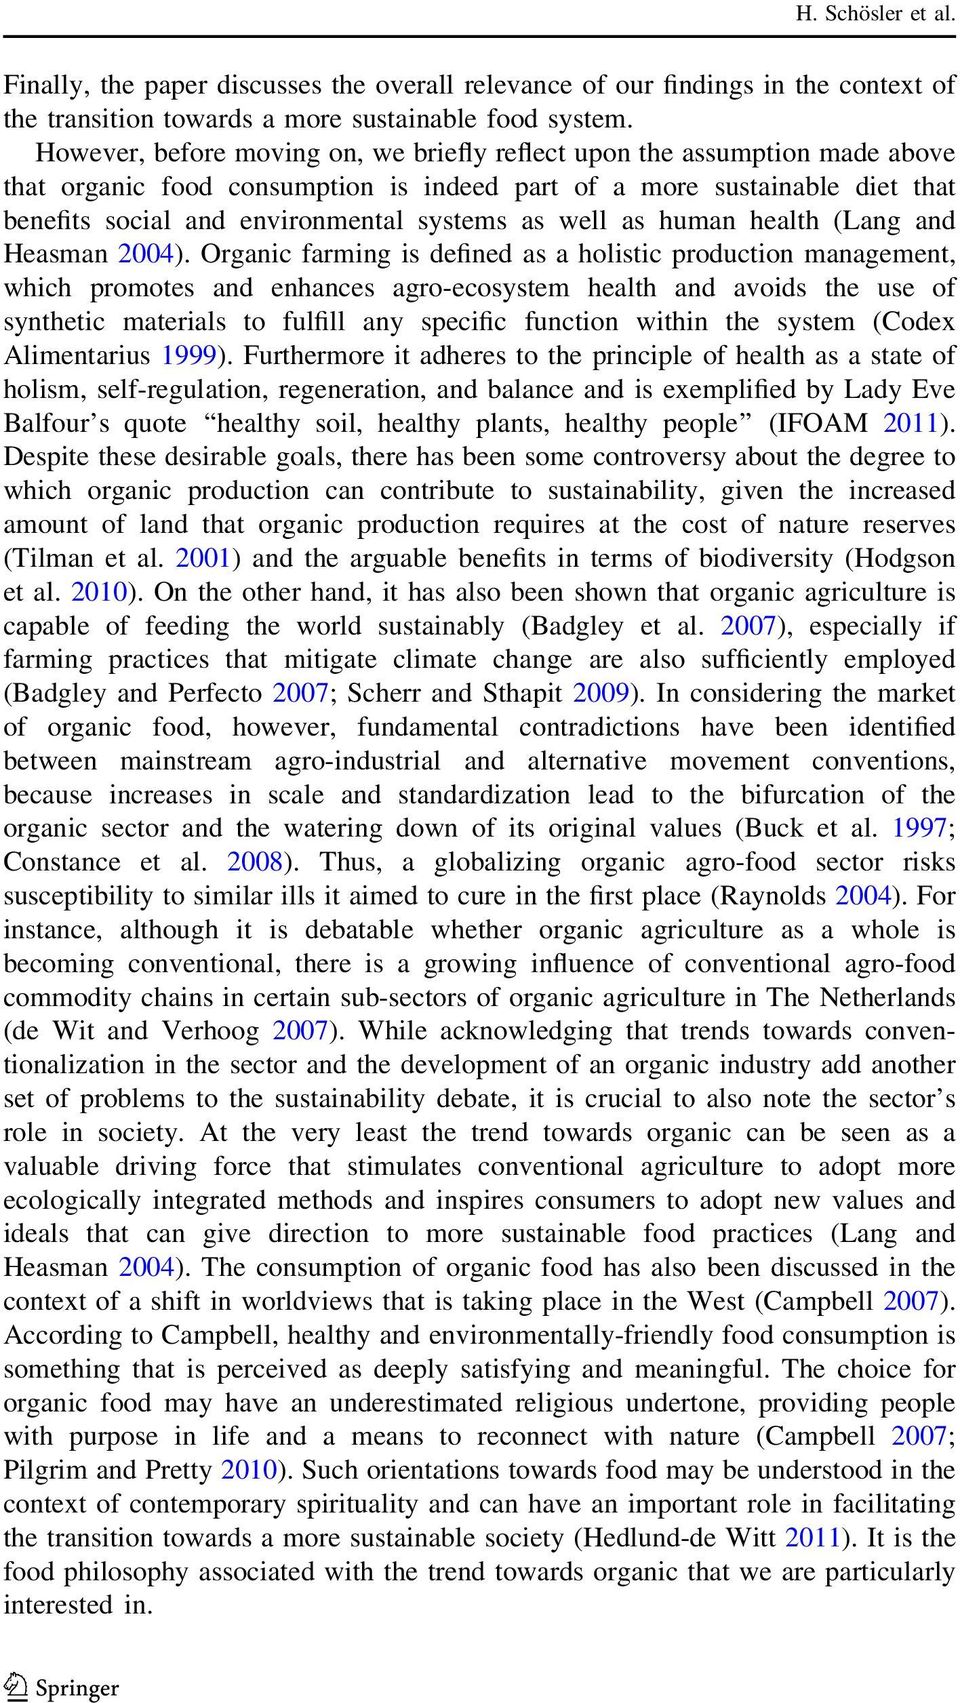 well as human health (Lang and Heasman 2004).